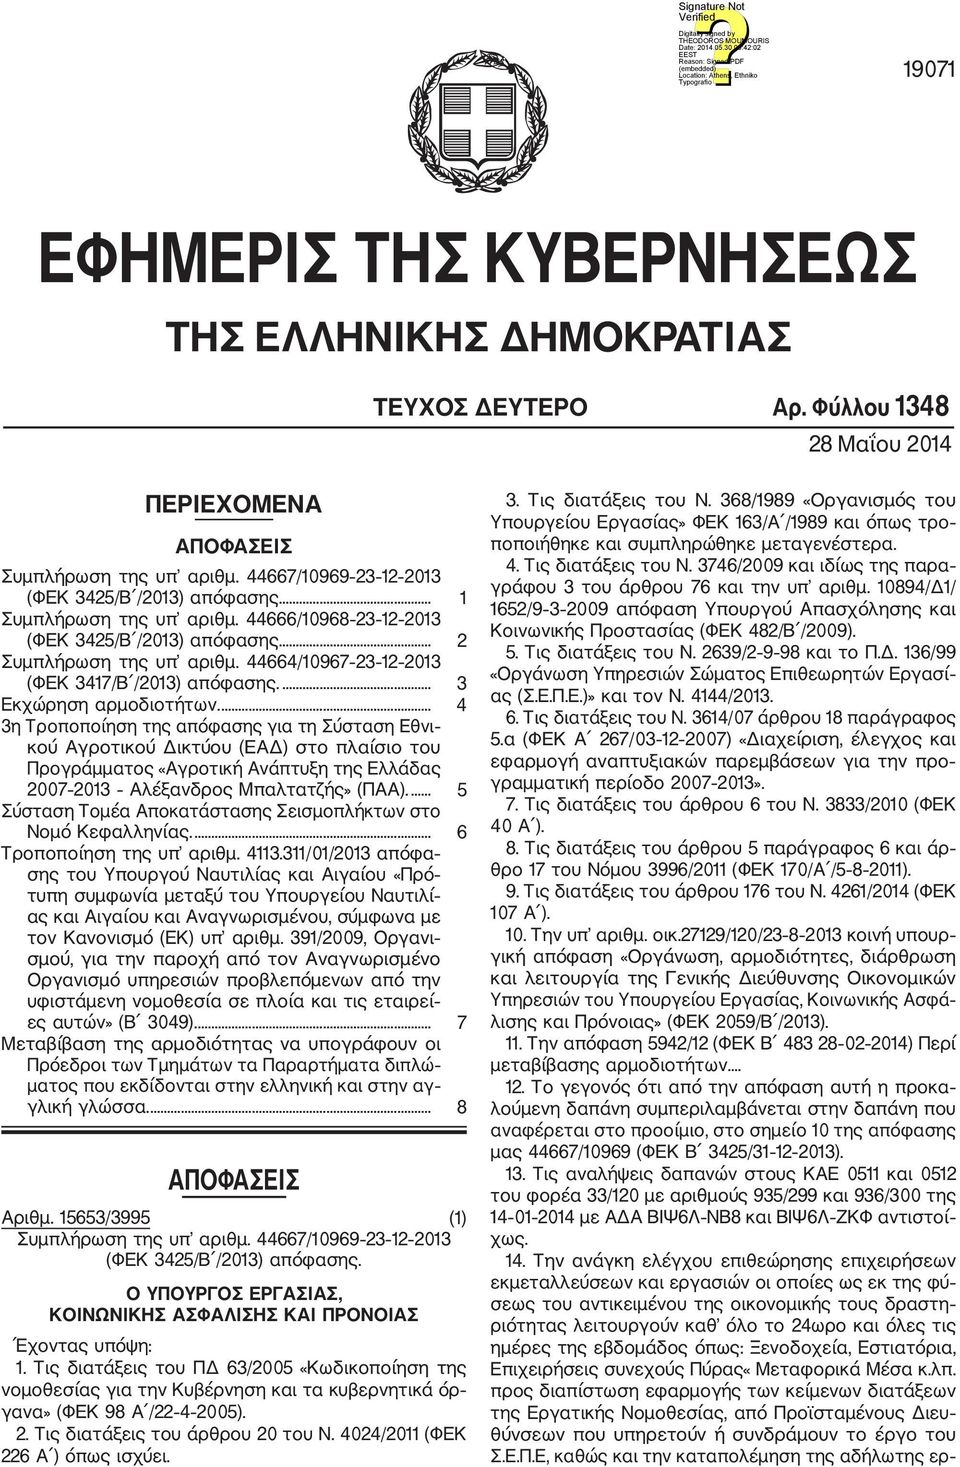 ... 4 3η Τροποποίηση της απόφασης για τη Σύσταση Εθνι κού Αγροτικού Δικτύου (ΕΑΔ) στο πλαίσιο του Προγράμματος «Αγροτική Ανάπτυξη της Ελλάδας 2007 2013 Αλέξανδρος Μπαλτατζής» (ΠΑΑ).